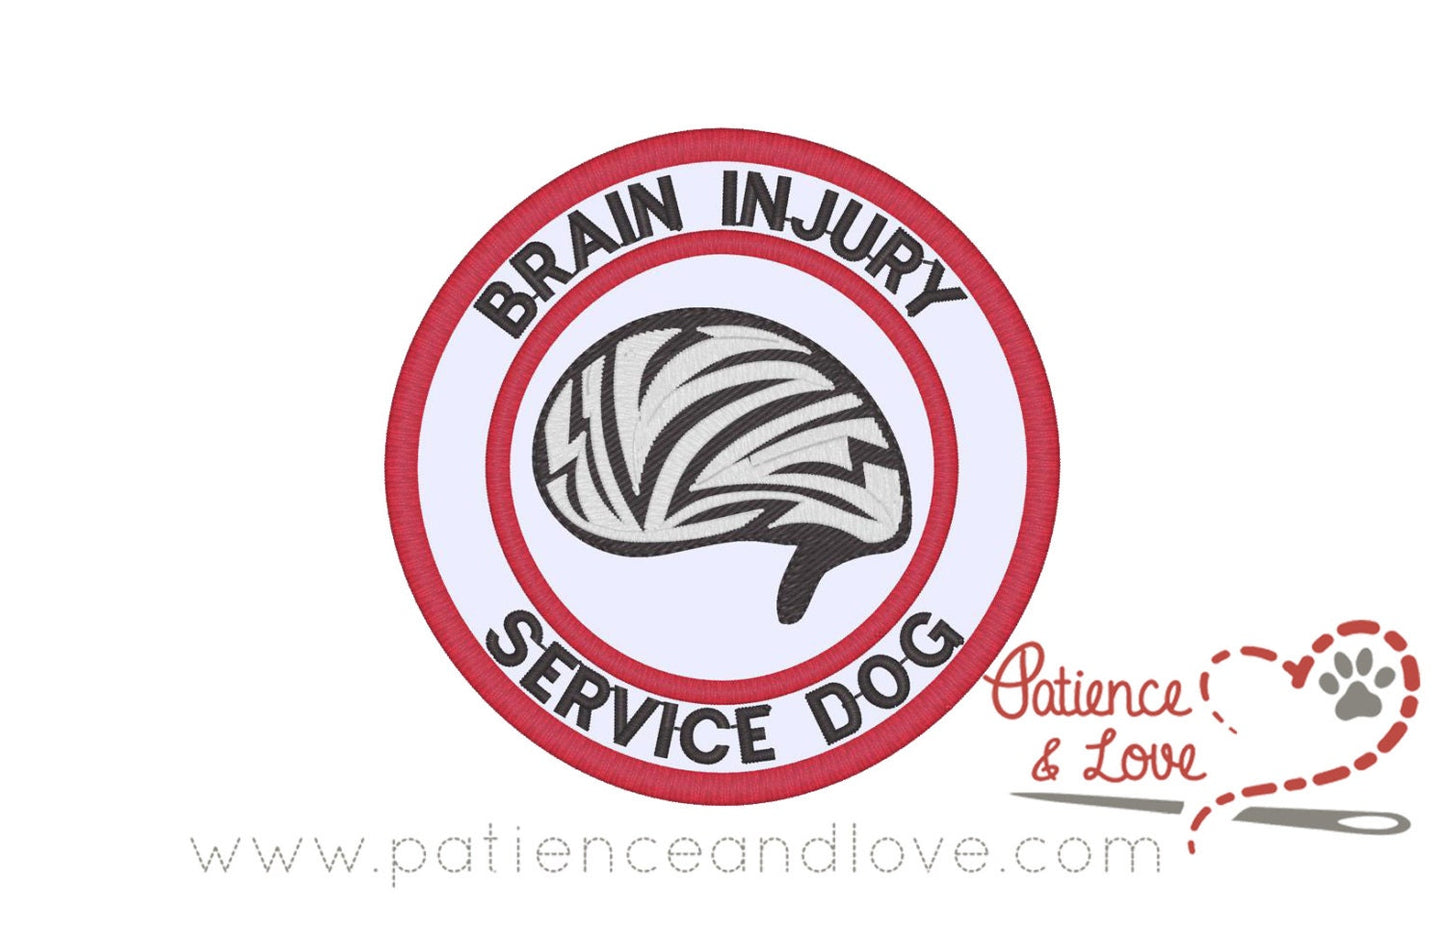 Brain injury service dog, brain in center, 3 inch round patch